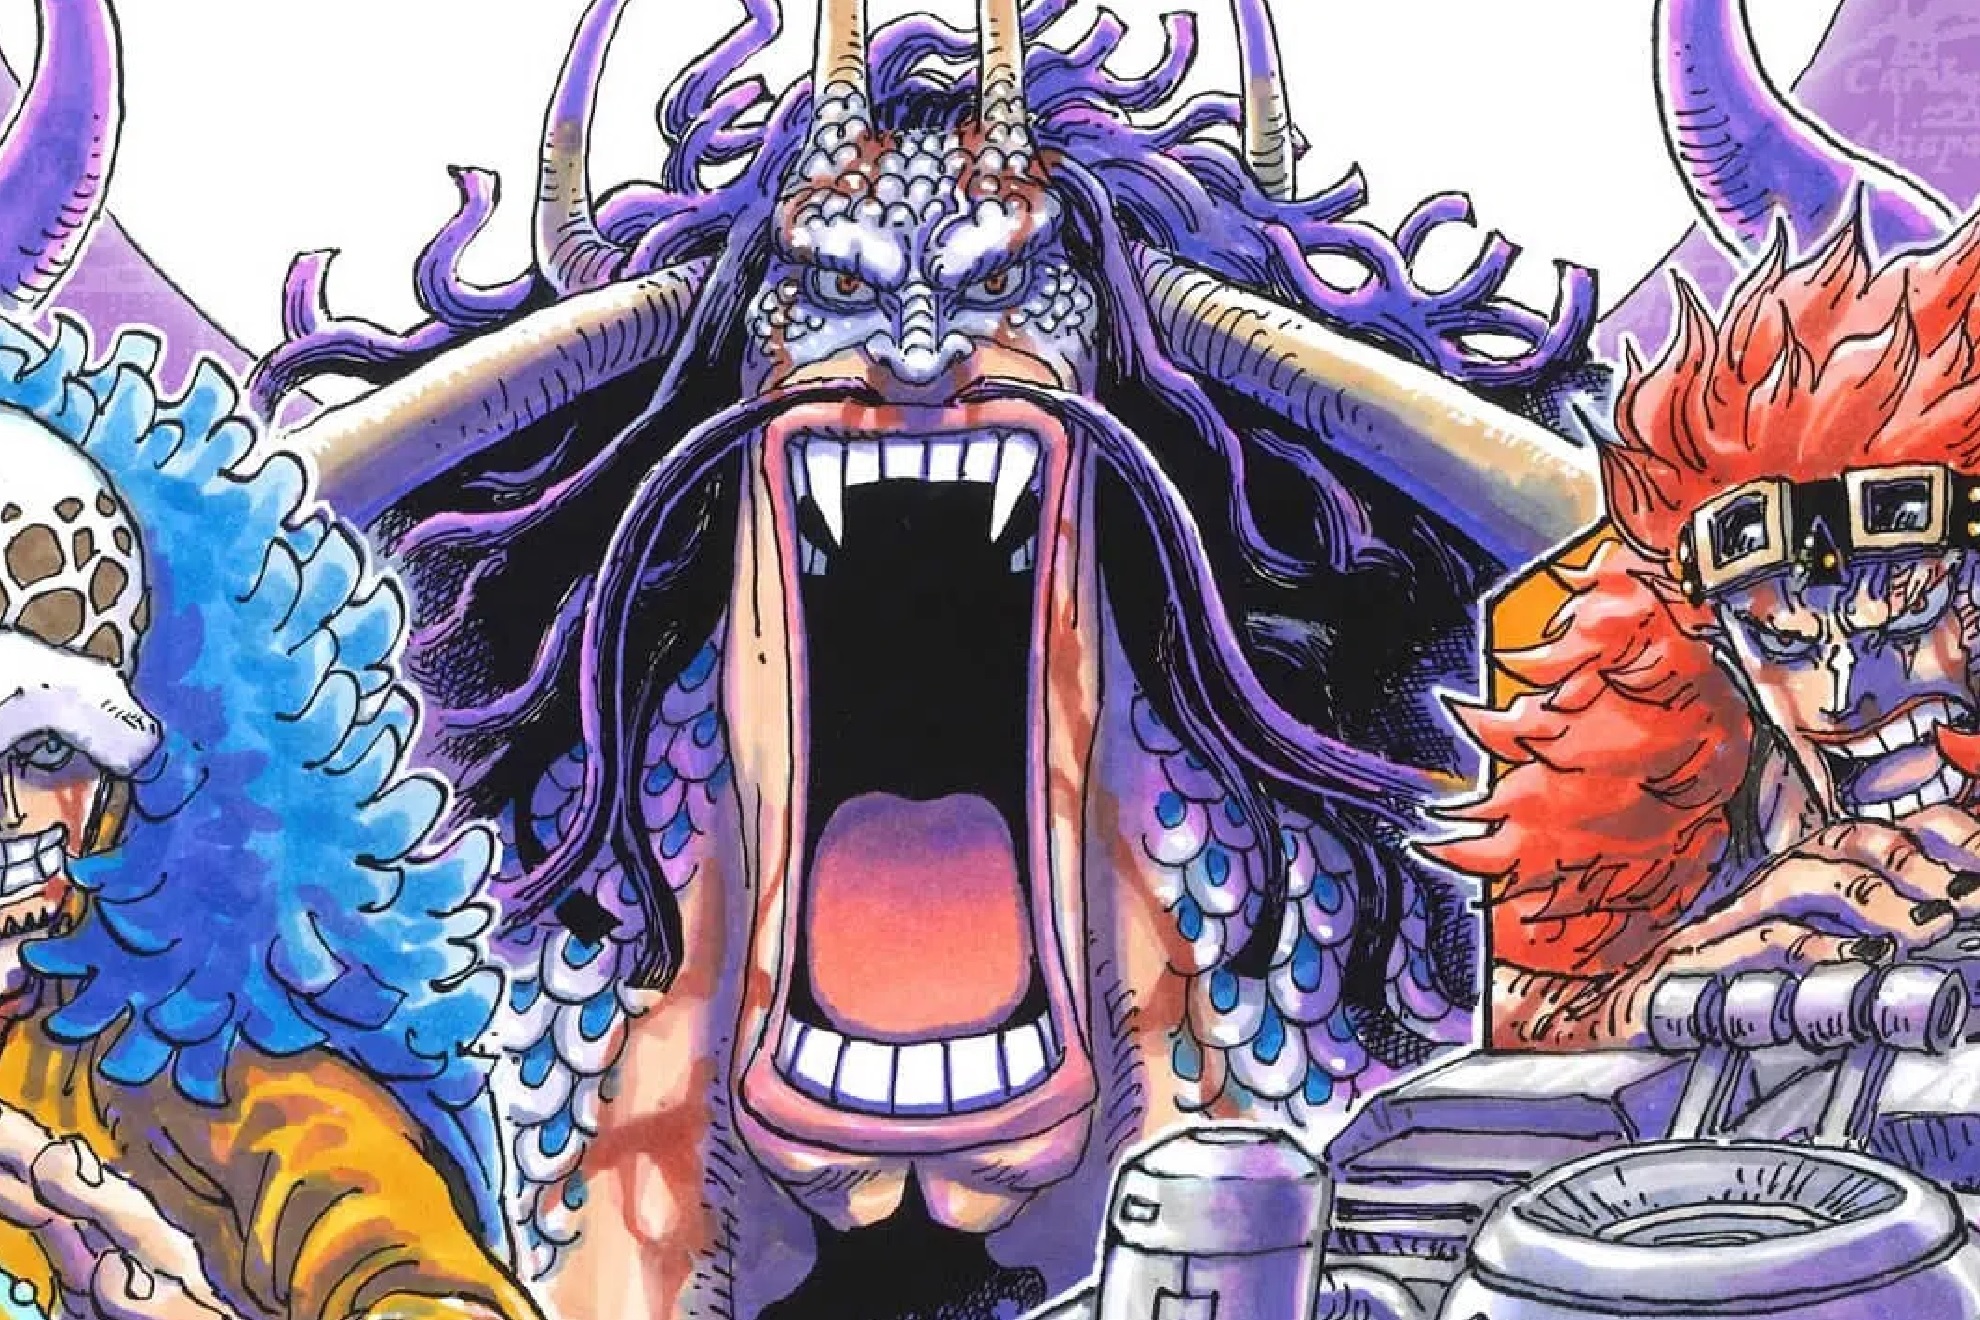 Descubre cuándo y cómo leer el capítulo 1057 del manga One Piece en español.